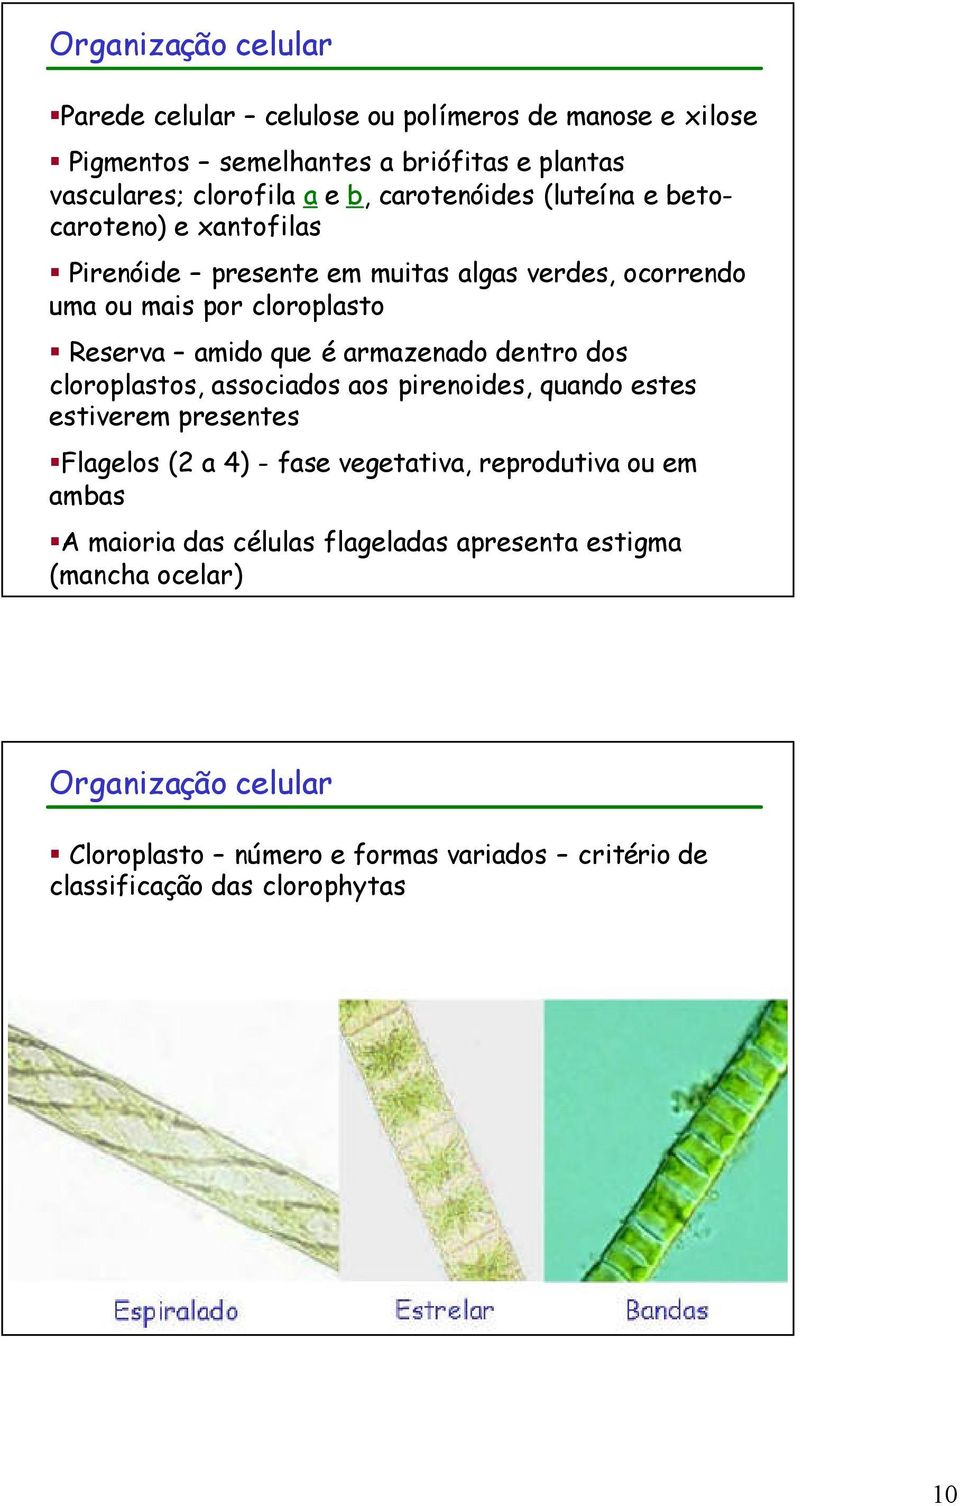 armazenado dentro dos cloroplastos, associados aos pirenoides, quando estes estiverem presentes Flagelos (2 a 4) - fase vegetativa, reprodutiva ou em ambas